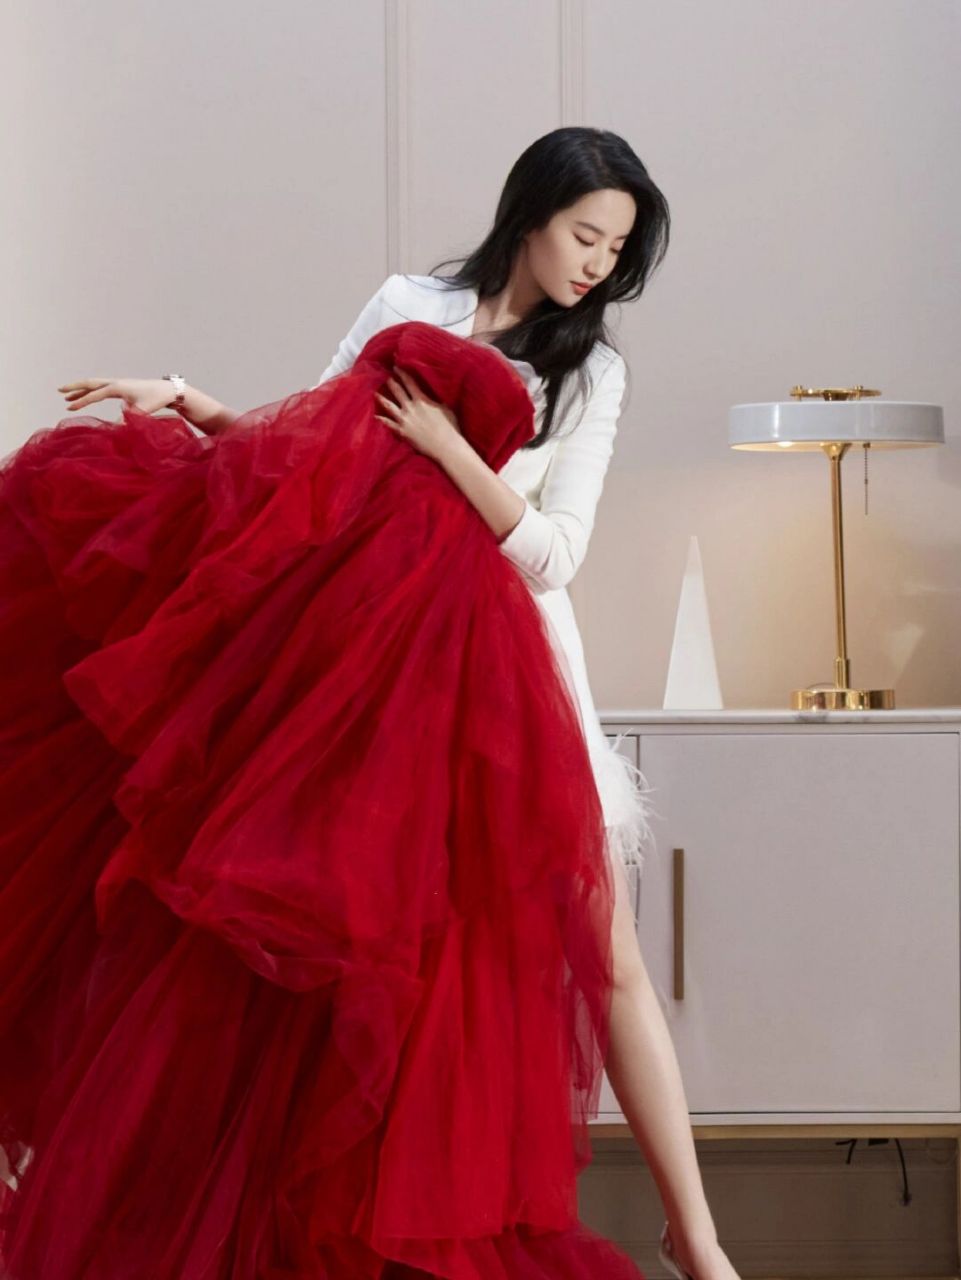 这不,刘亦菲穿一袭红色抹胸礼服裙,洋溢着幸福与热情,高贵优雅显